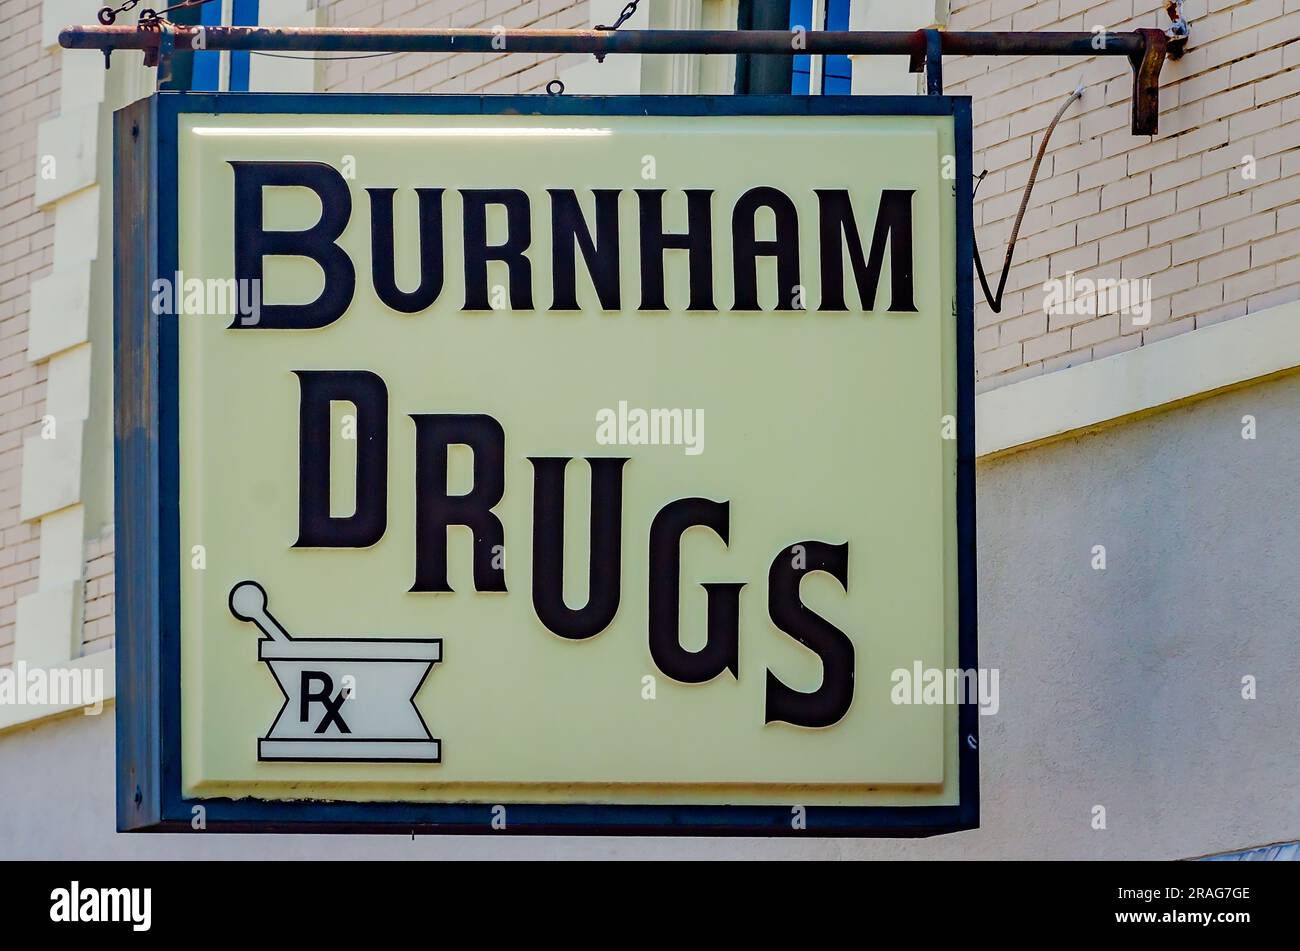 Burnham Drugs è raffigurato il 24 giugno 2023 a Moss Point, Mississippi. La farmacia è stata fondata dal farmacista K.W. Burnham nel 1902. Foto Stock